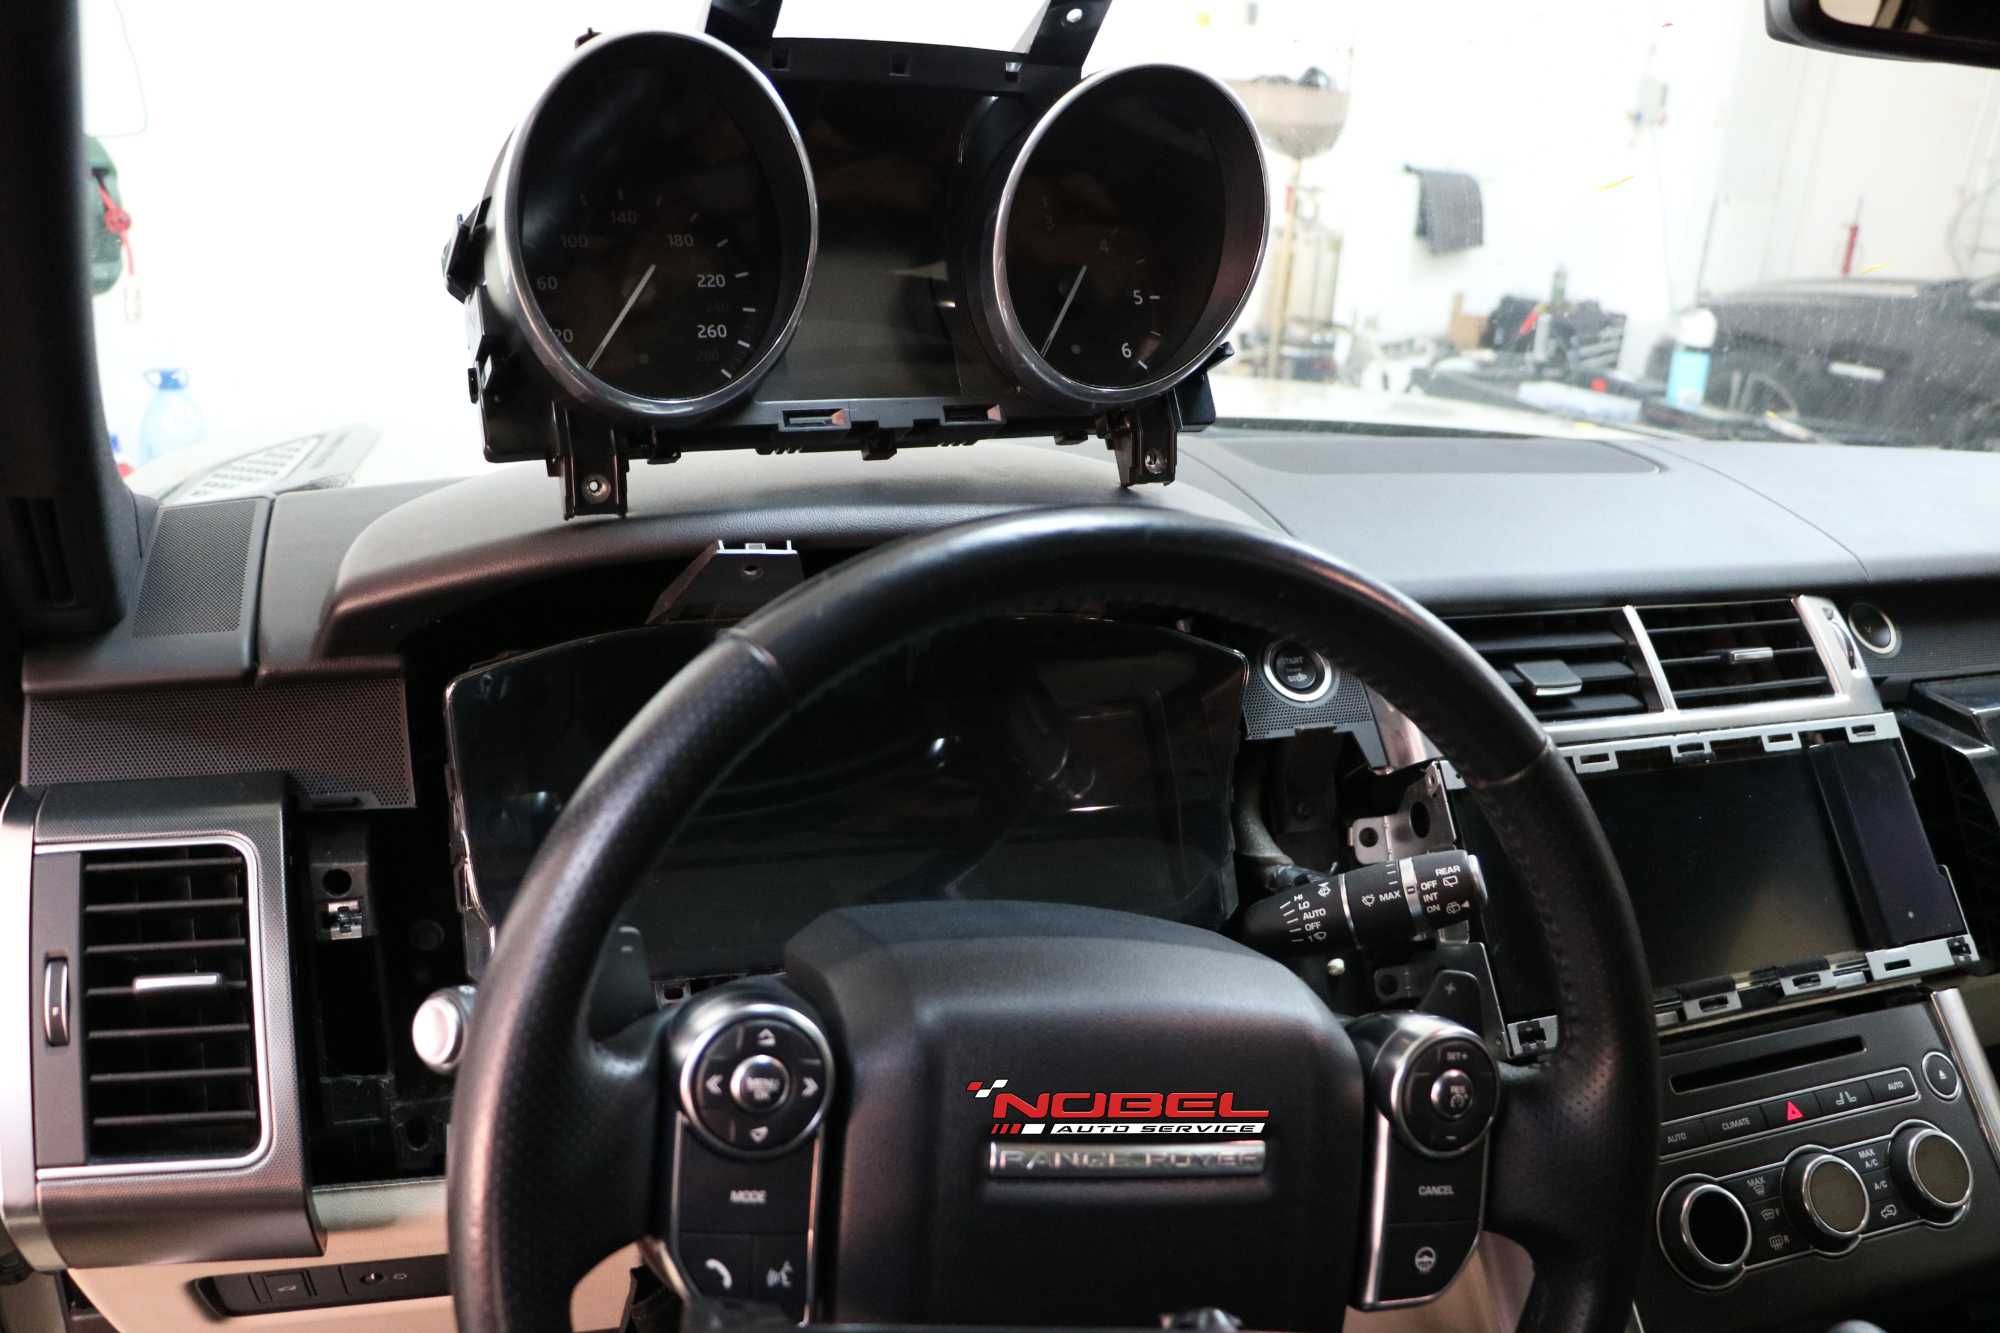 Retrofit ceasuri de bord analog la digital Mercedes Benz Land Rover